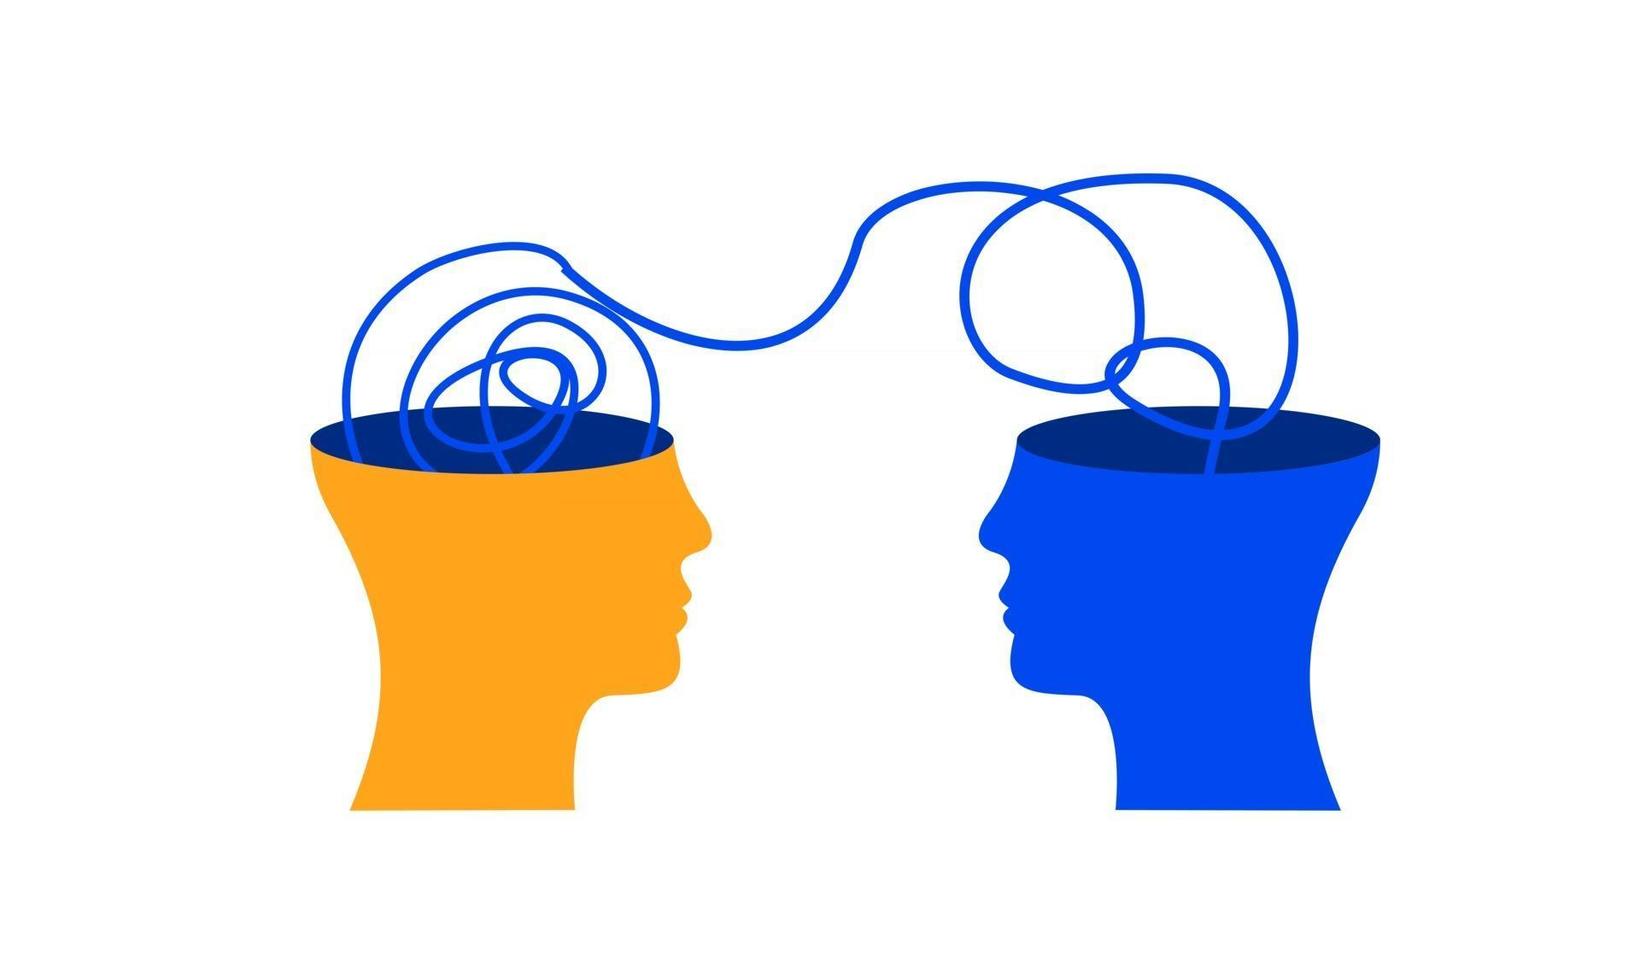 Austausch von Ideen zum Austausch von Geisteszuständen psychische Gesundheit Depression Bewusstsein flache Illustration Design Vektor Banner